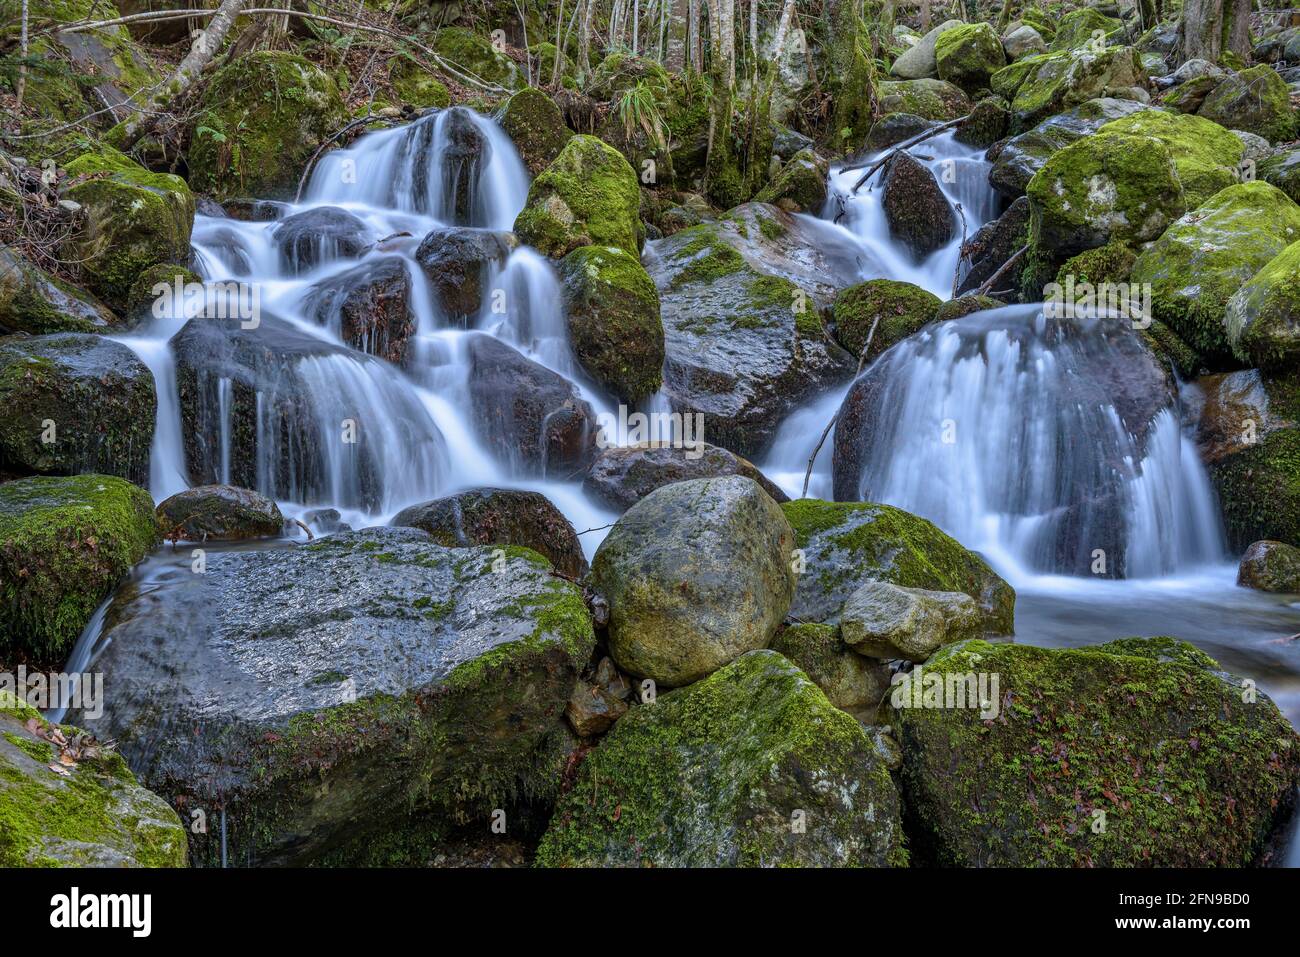 Waterfall in Toran river, in the Torán Valley (Aran Valley, Catalonia, Spain, Pyrenees) ESP: Salto de agua en el río Toran, en el Valle de Torán Stock Photo